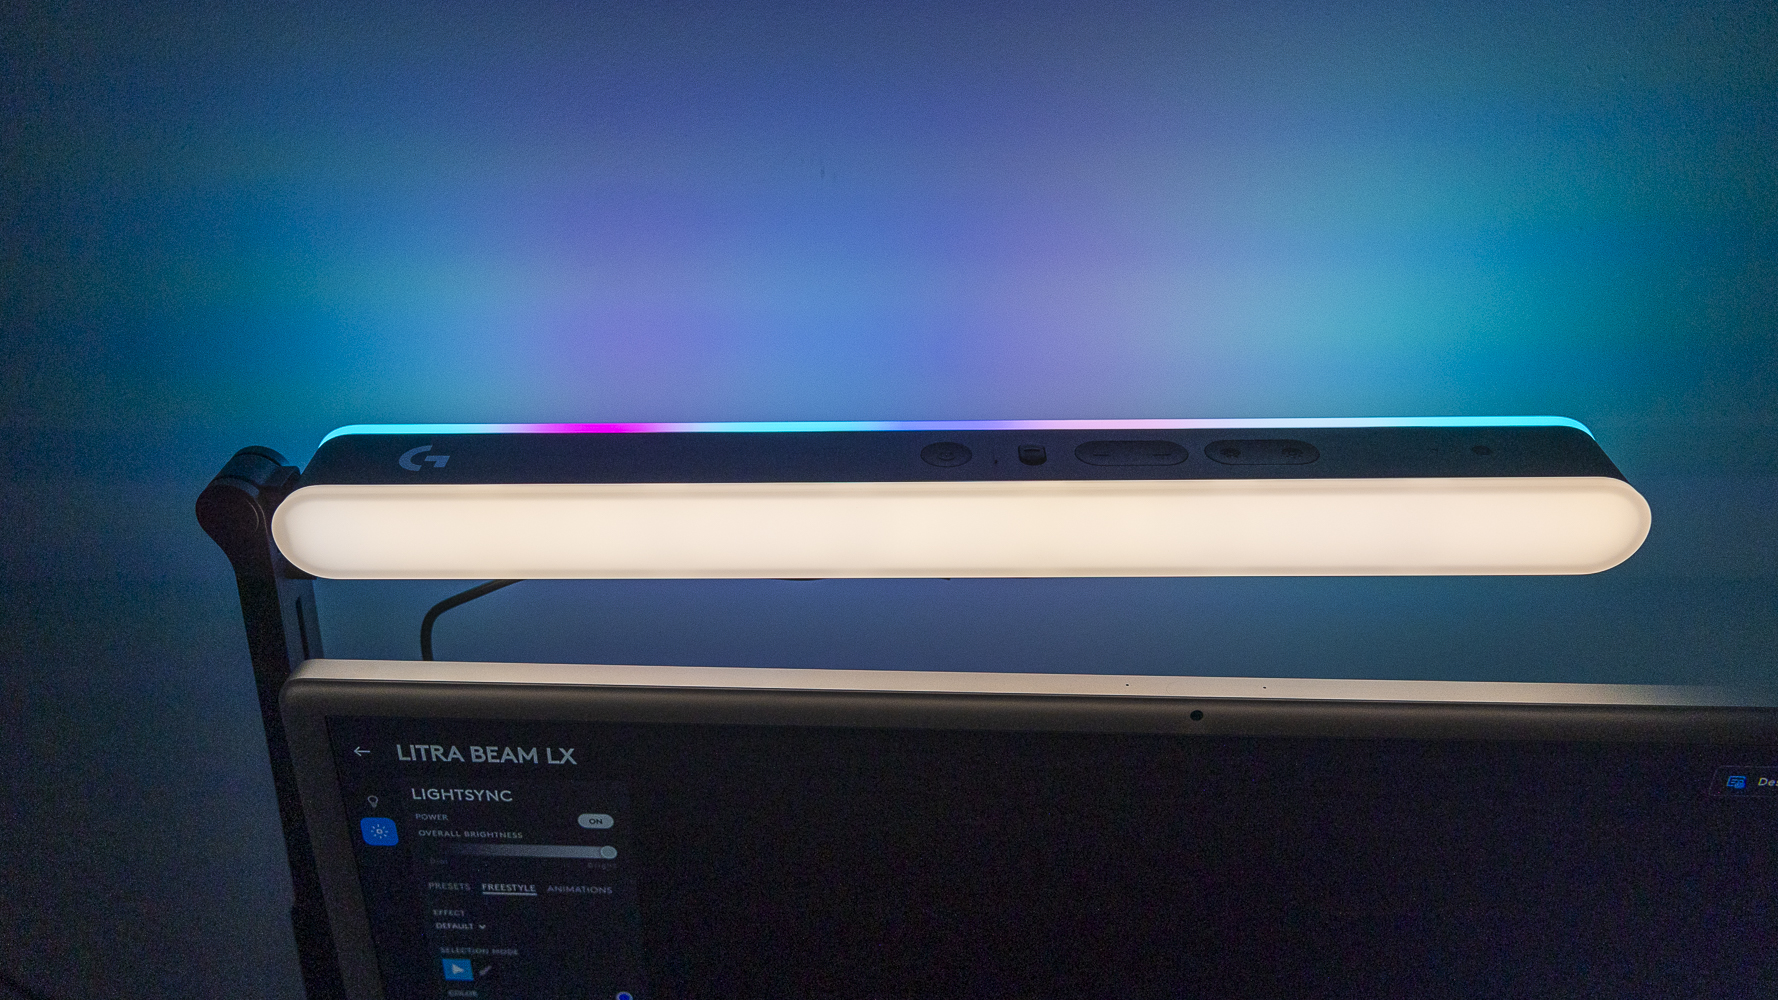 Le Logitech G Litra Beam LX derrière un iMac